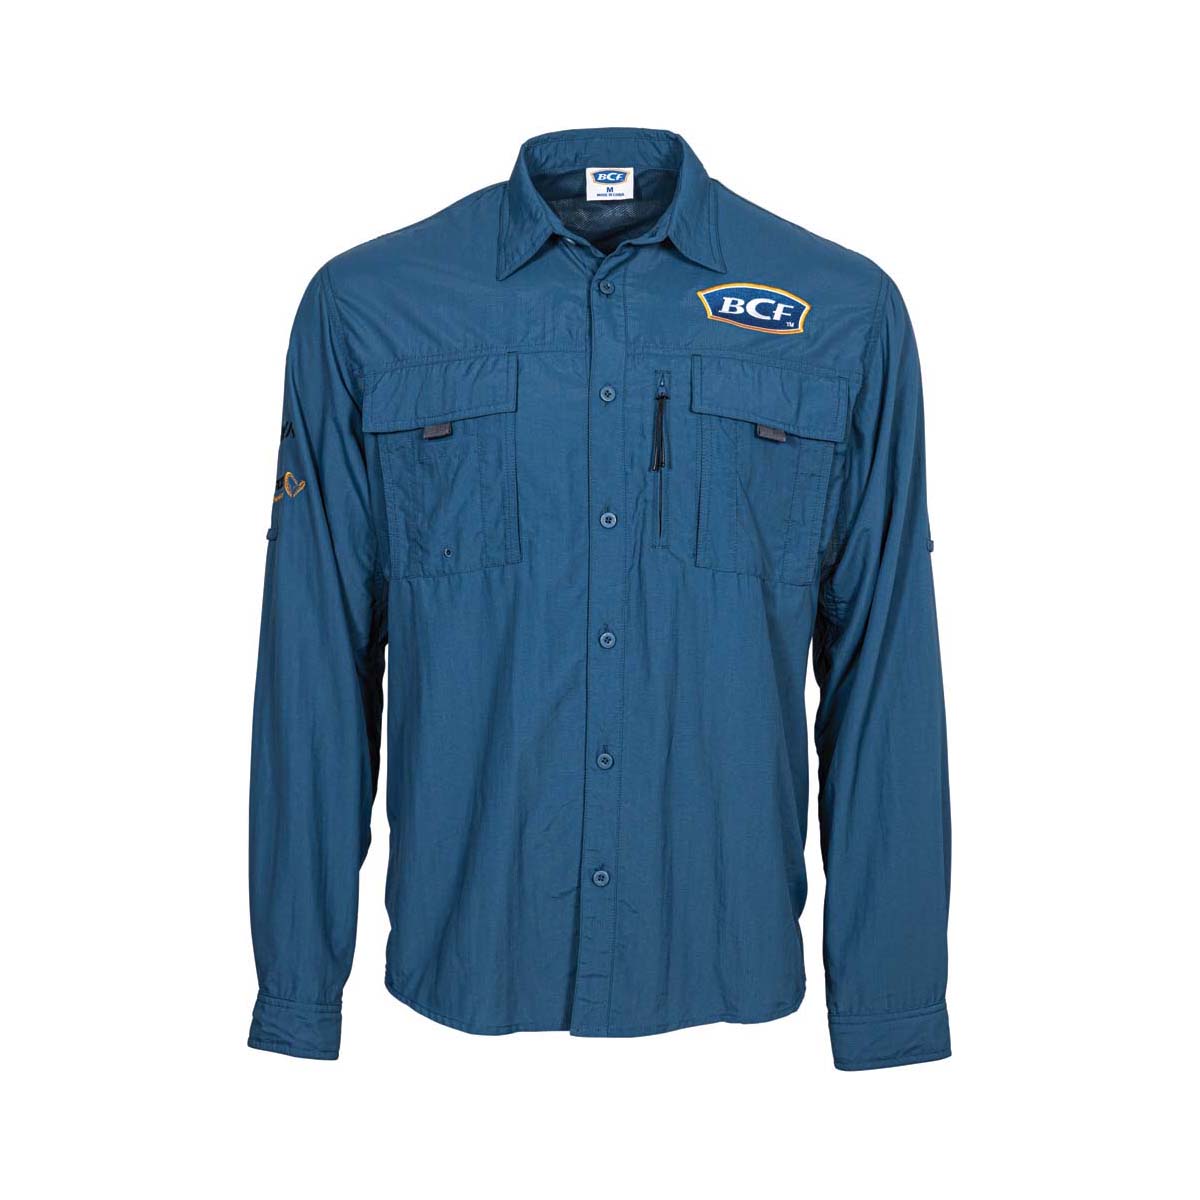 BCF Mens Long Sleeve Fishing Shirt Blue 2XL